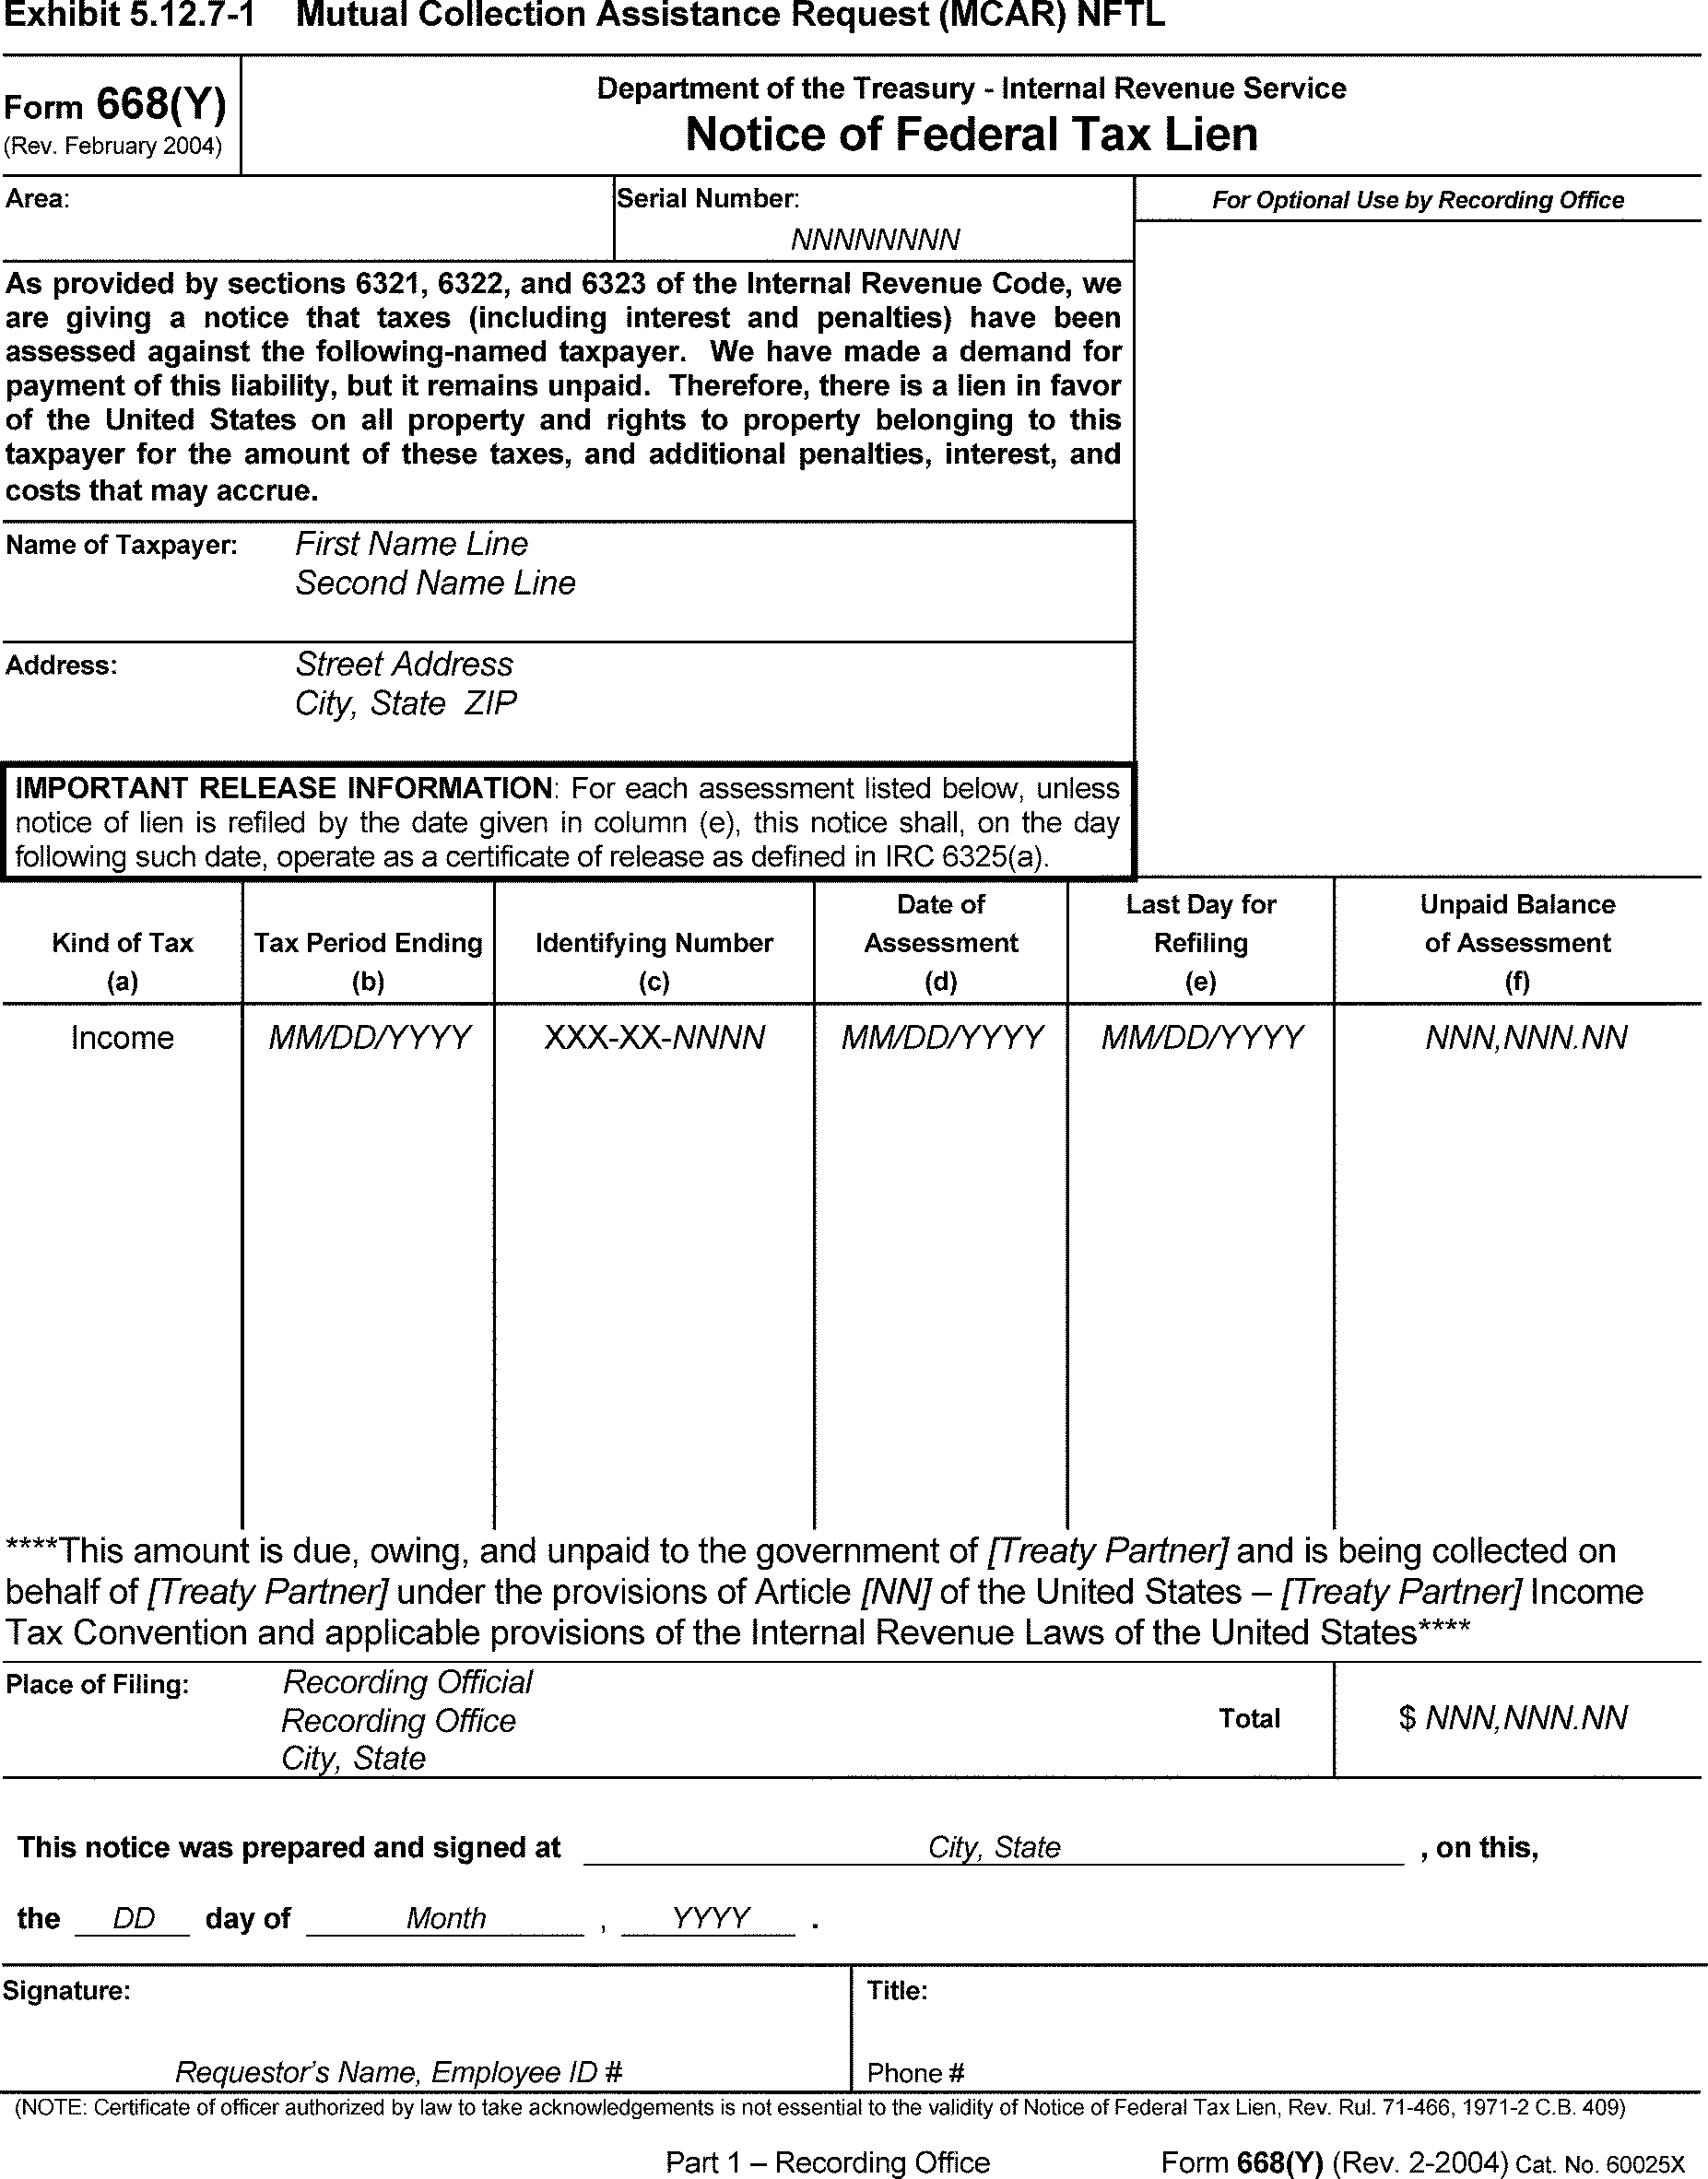 IRS Form 668(Y)